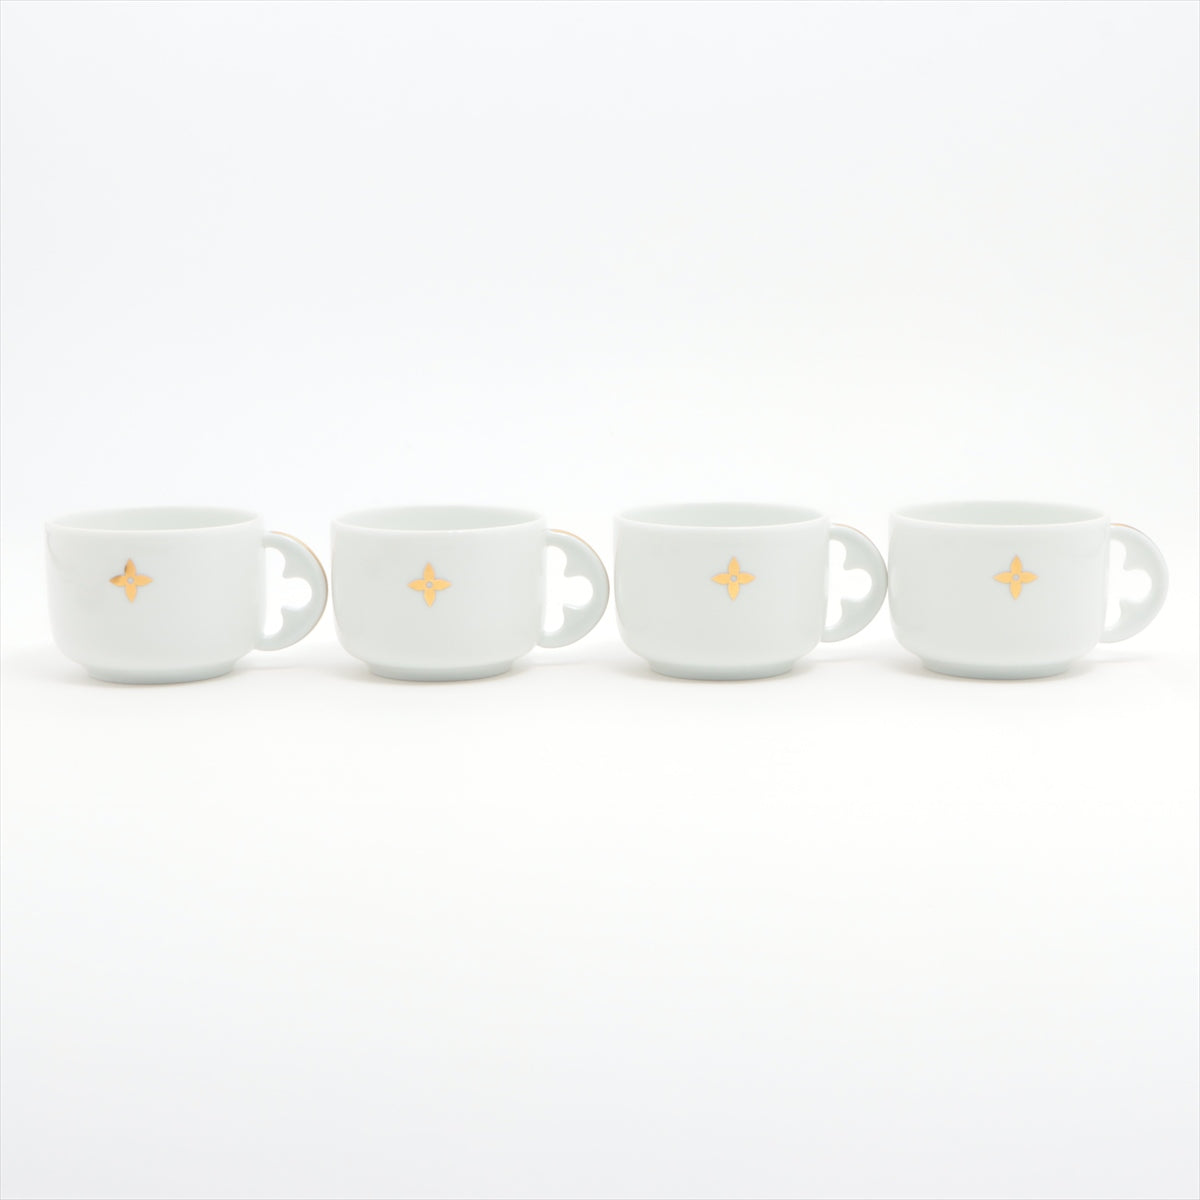 Louis Vuitton GI0821 teacup Porcelain LG0223 cup and saucer Ceramic